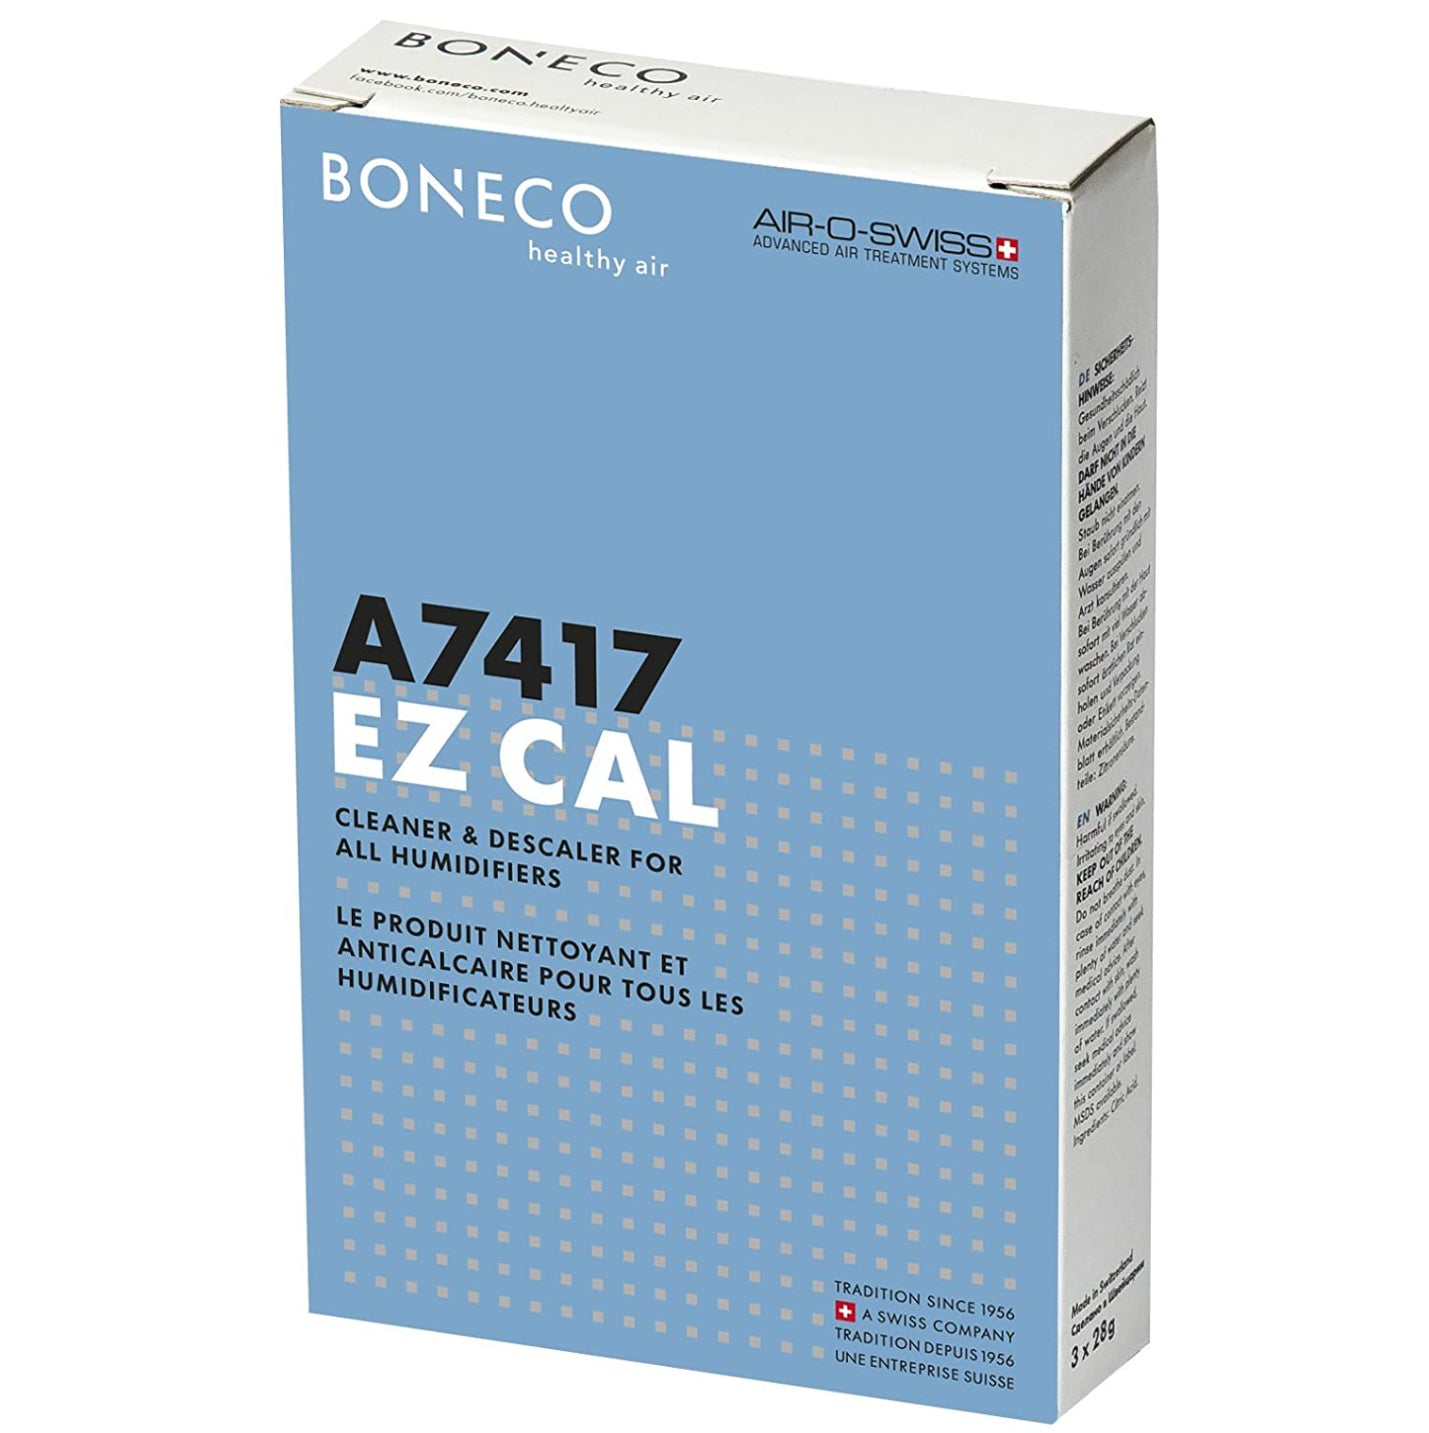 Boneco EZCal 7417 Humidifier Cleaner & Descaler – 3 Pack